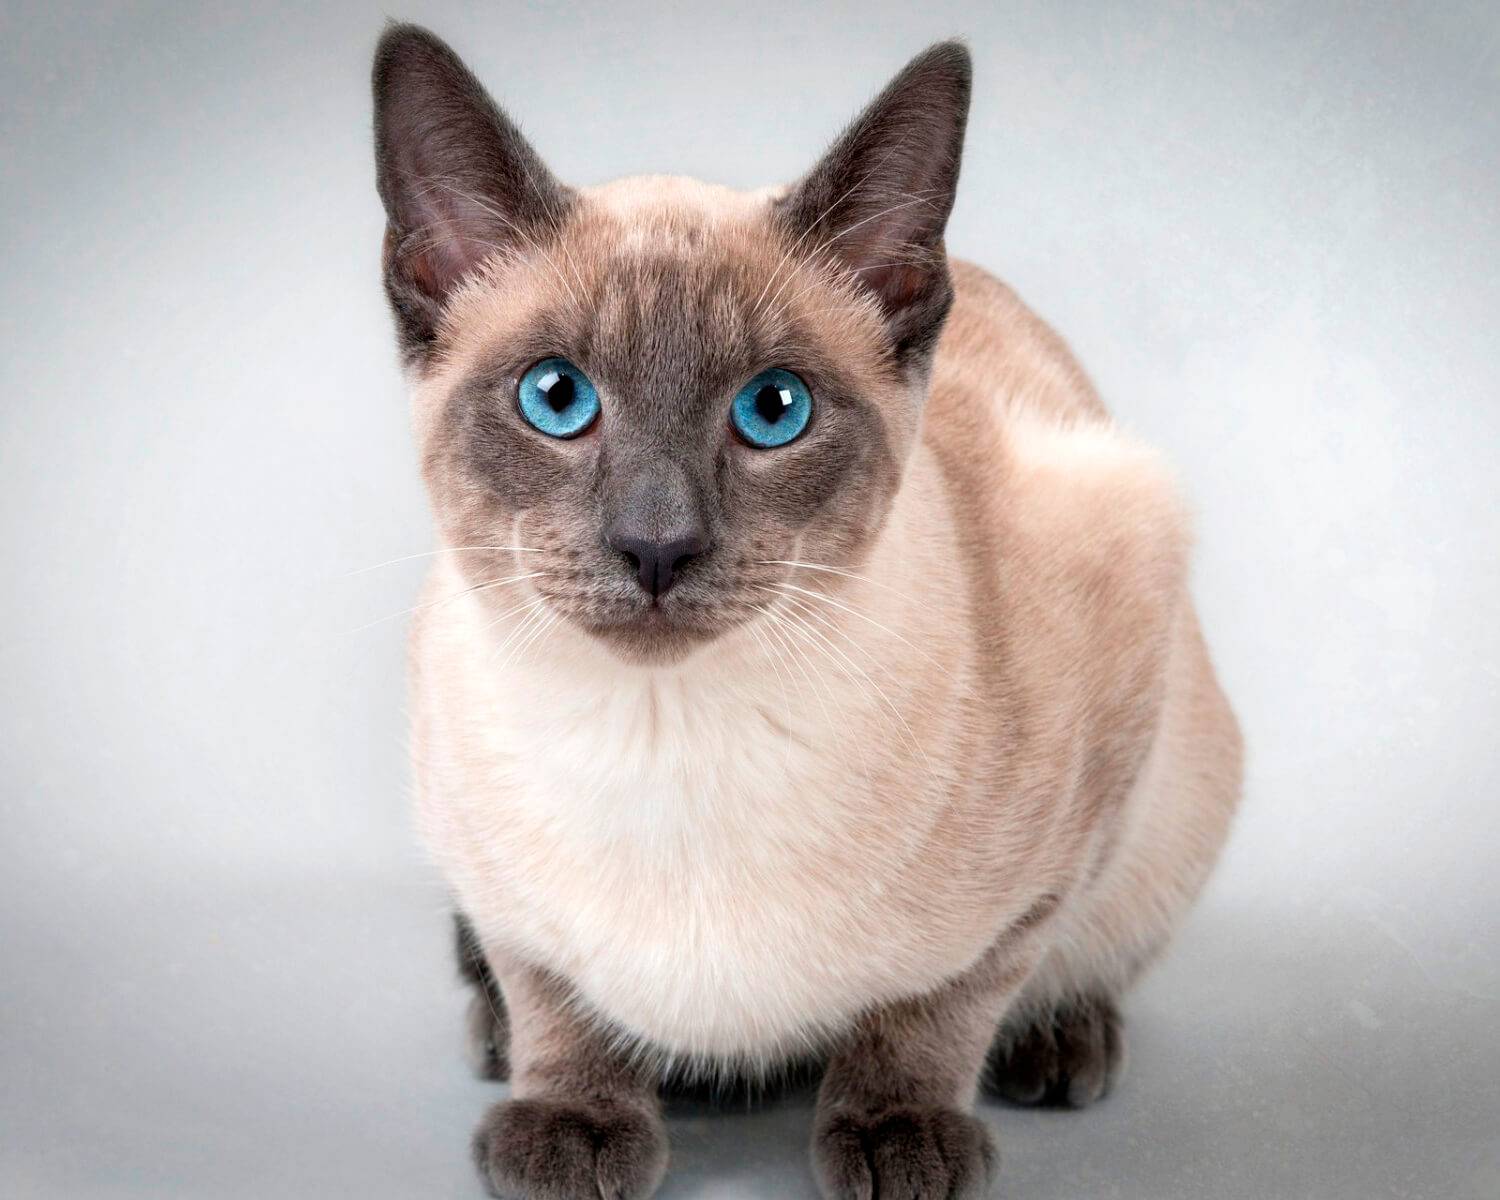 Тайская кошка: фото, описание, окрас, характер, стандарт породы